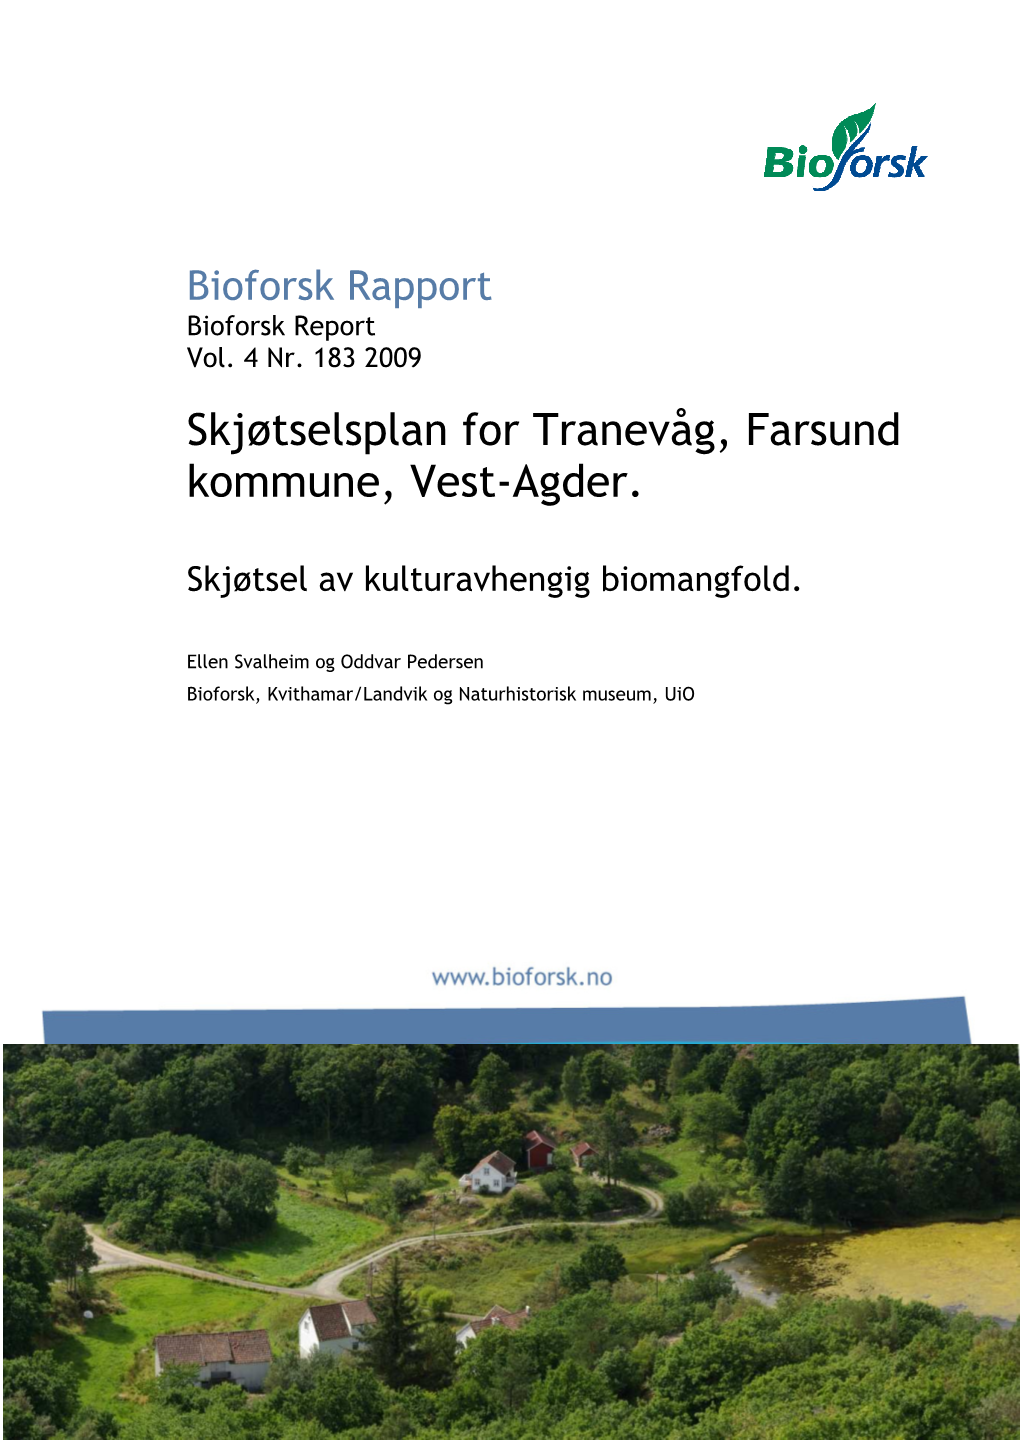 Bioforsk-Rapport-2009-04-183.Pdf (3.508Mb)